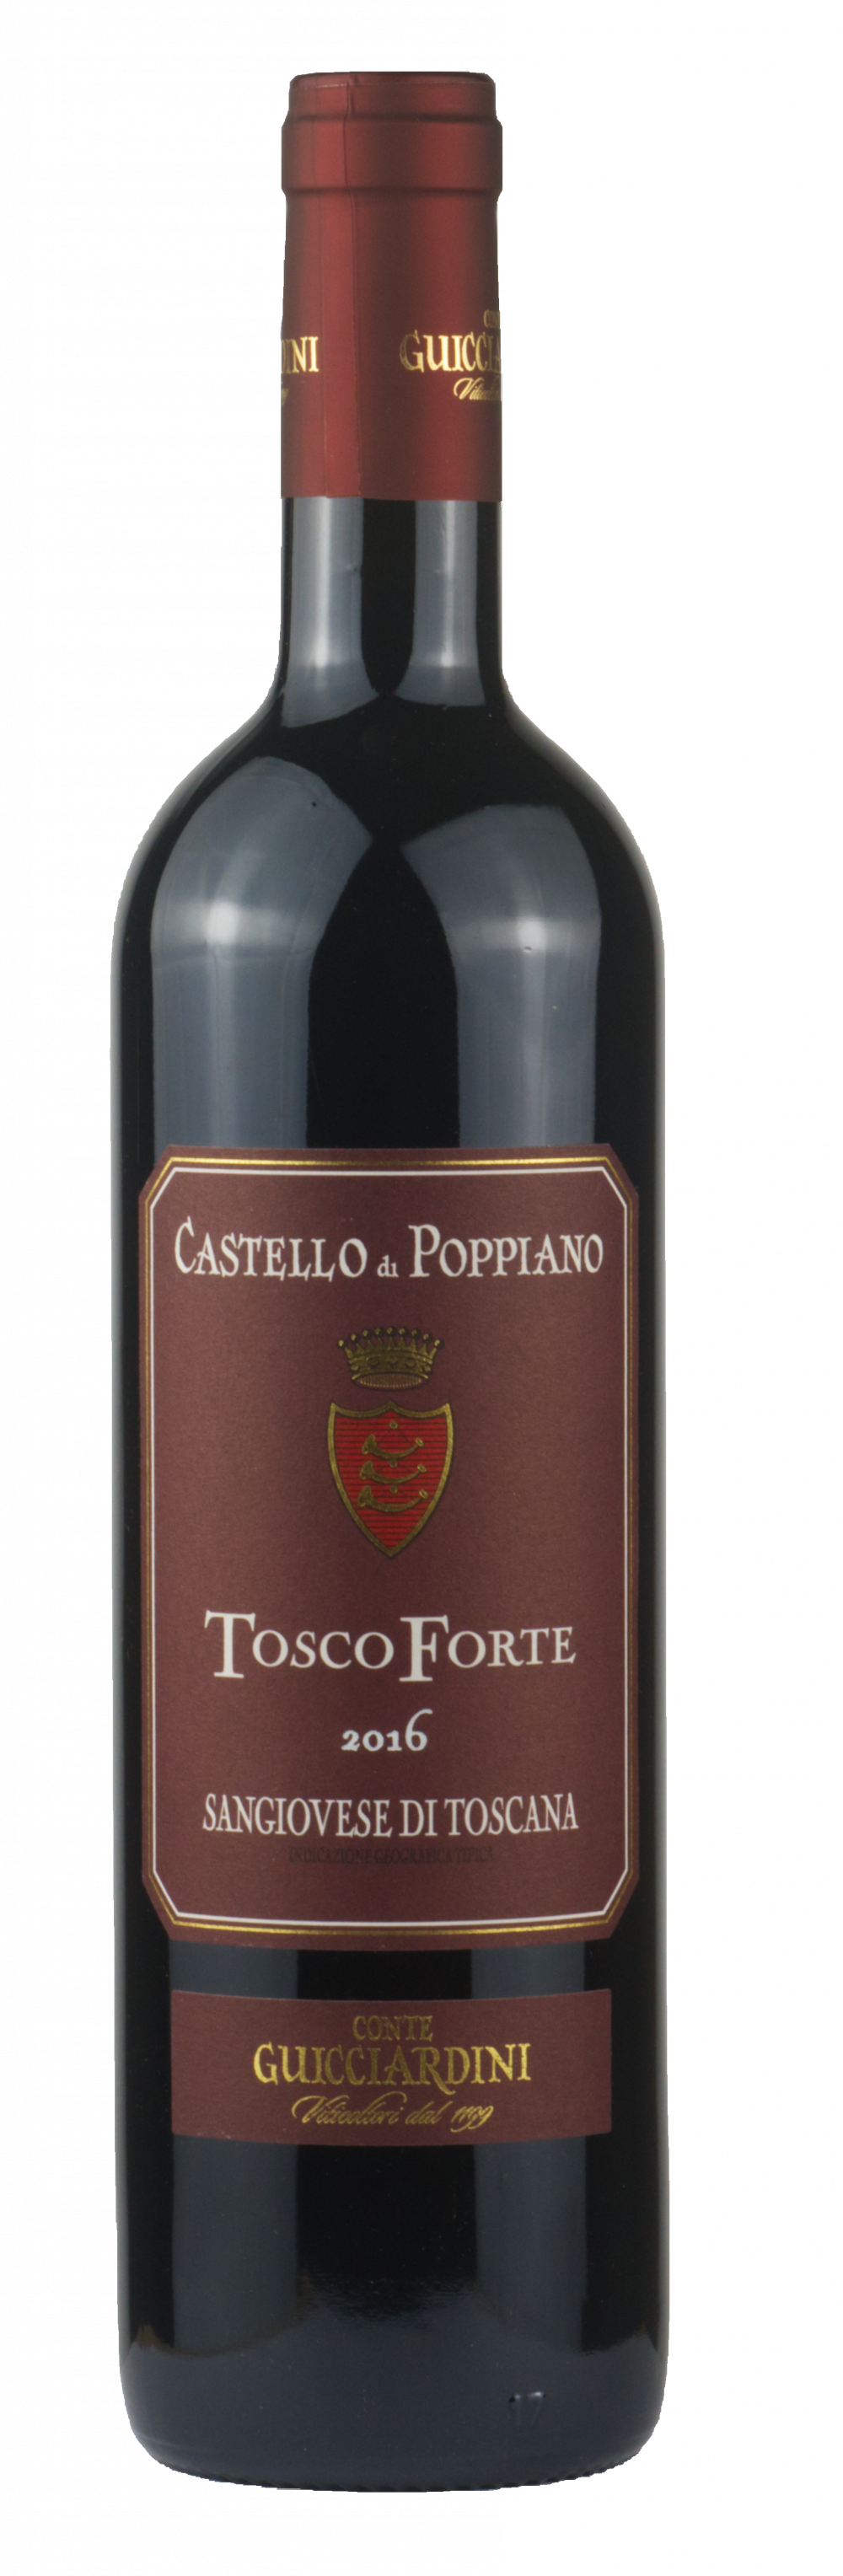 ToscoForte Toscana Rosso 2016 (Conte Guicciardini)